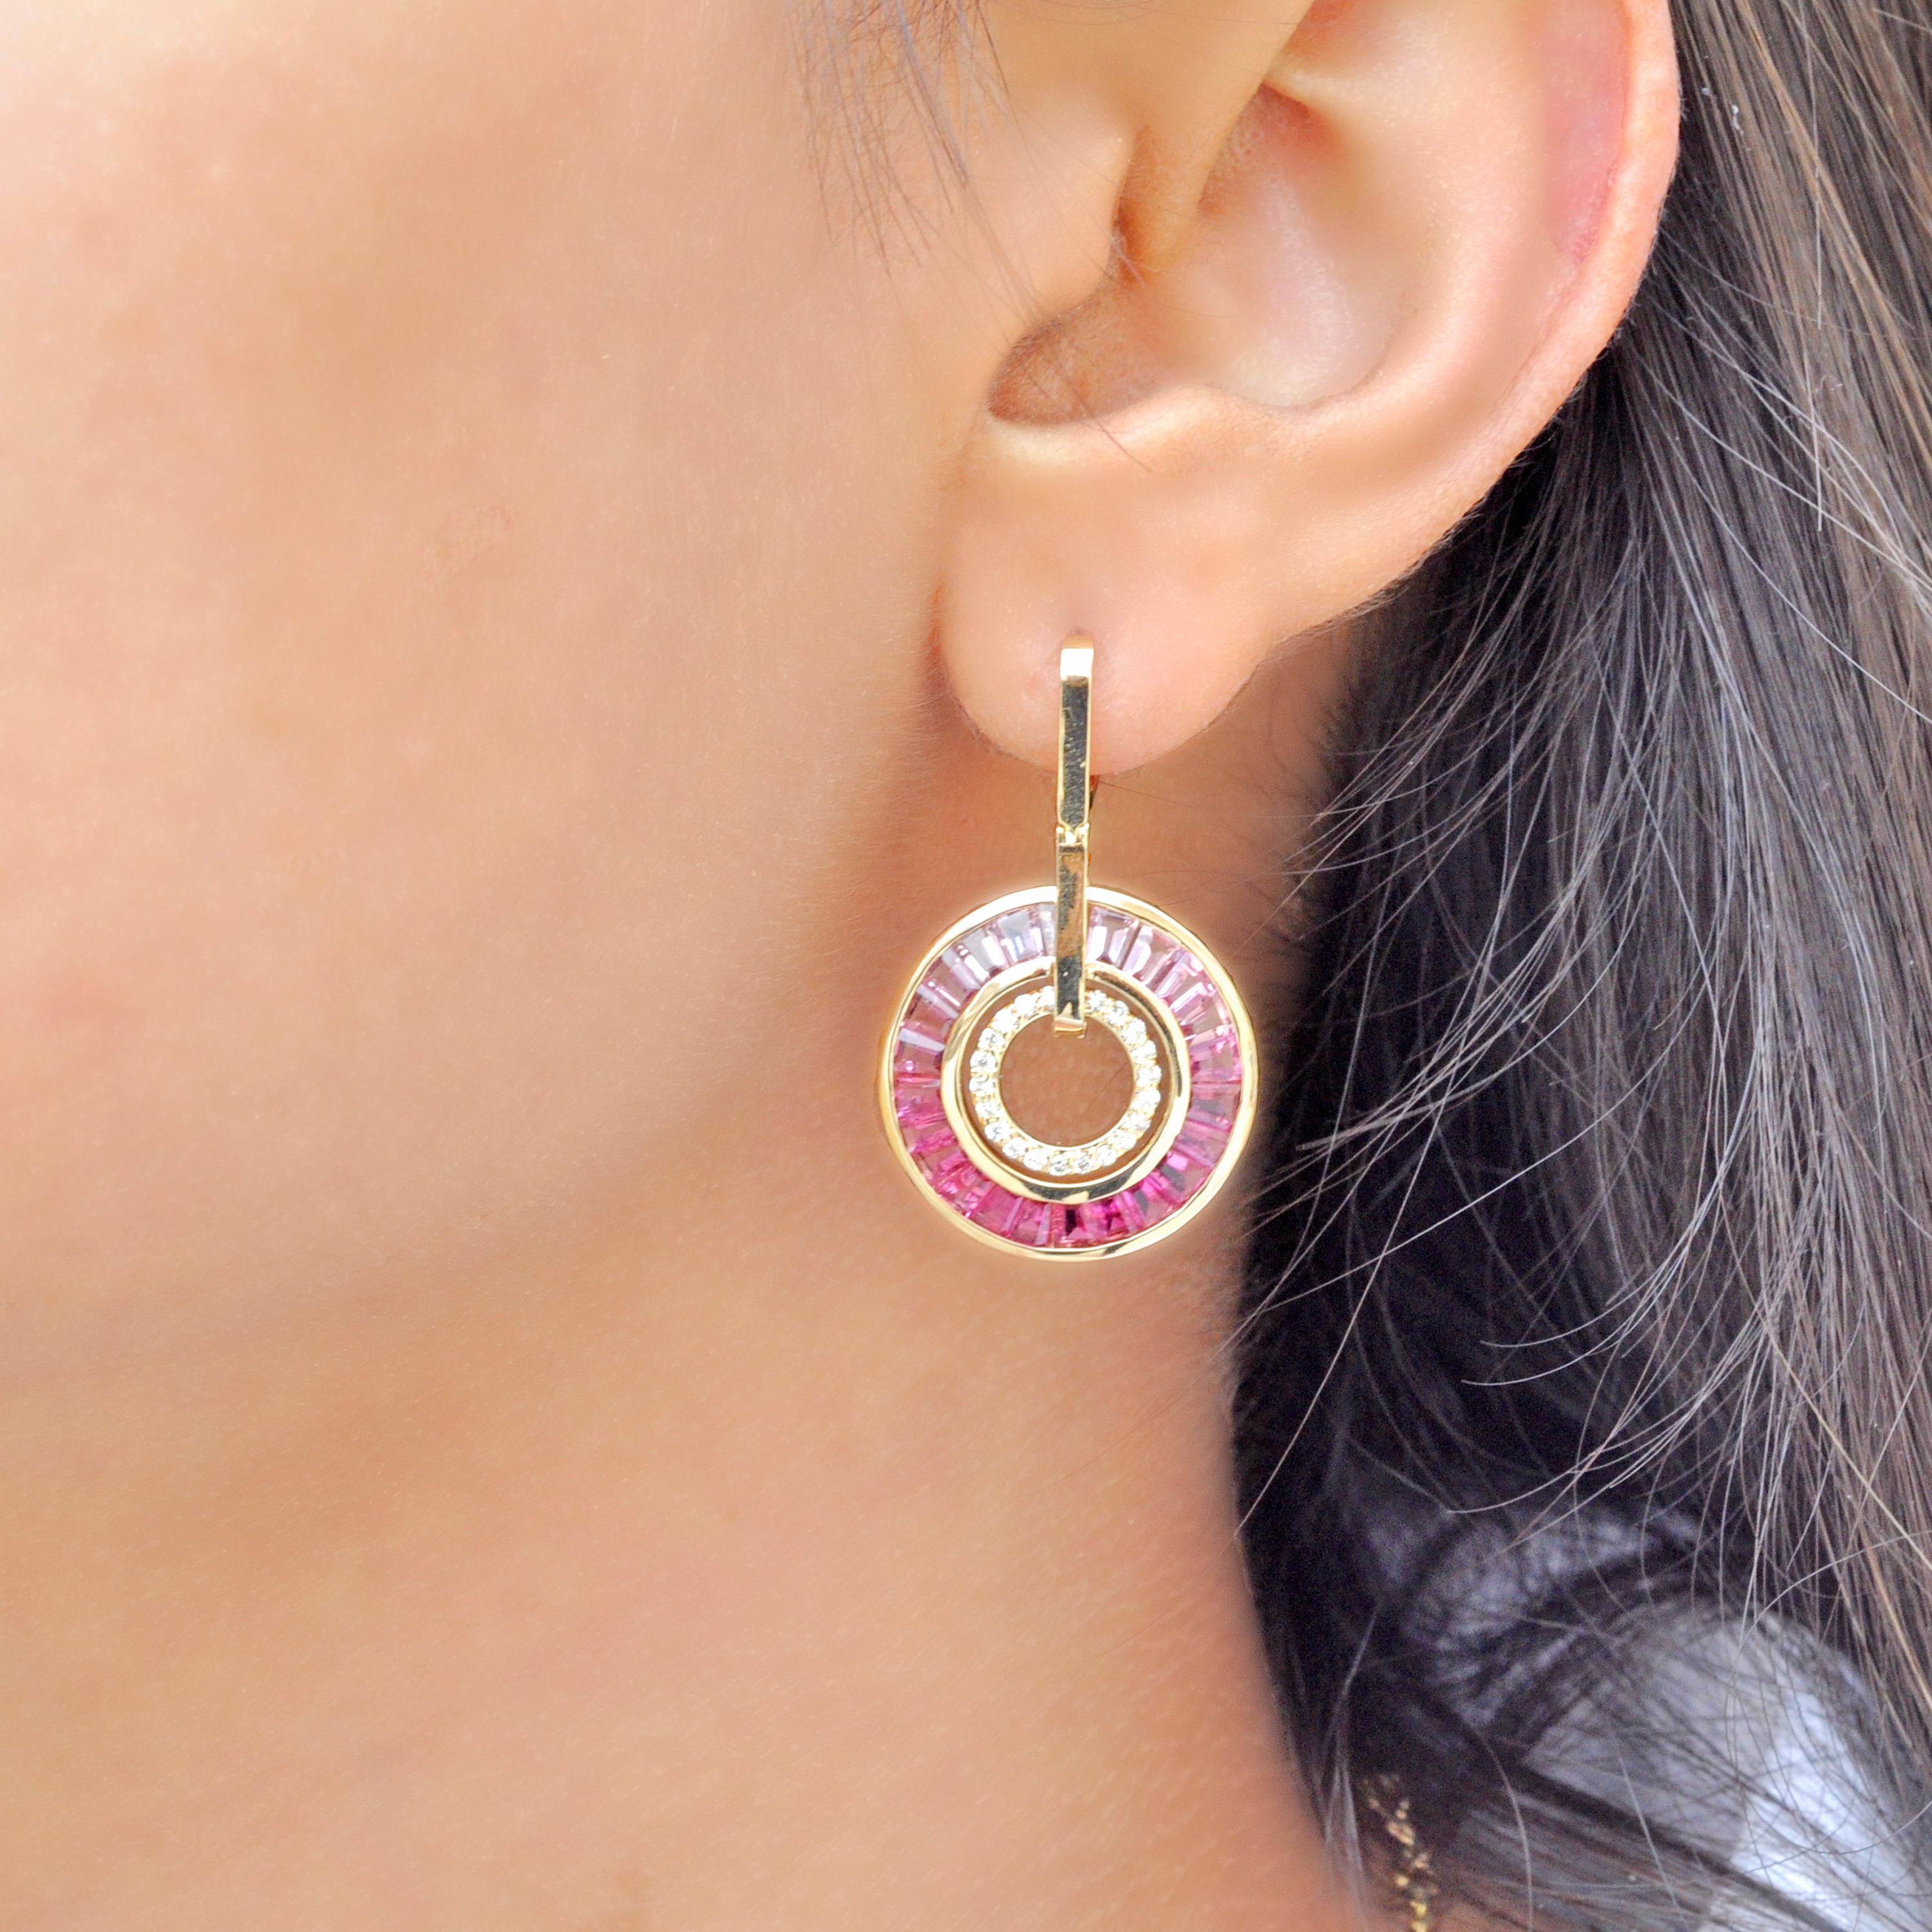 18k Gold rosa Turmalin Kegel Baguettes Diamant Kreis baumeln Art Deco inspirierte Ohrringe

Diese atemberaubenden Ohrringe aus 18 Karat Gold sind eine faszinierende Mischung aus Raffinesse und Anmut, bei der glänzende rosa Turmaline mit Diamanten im